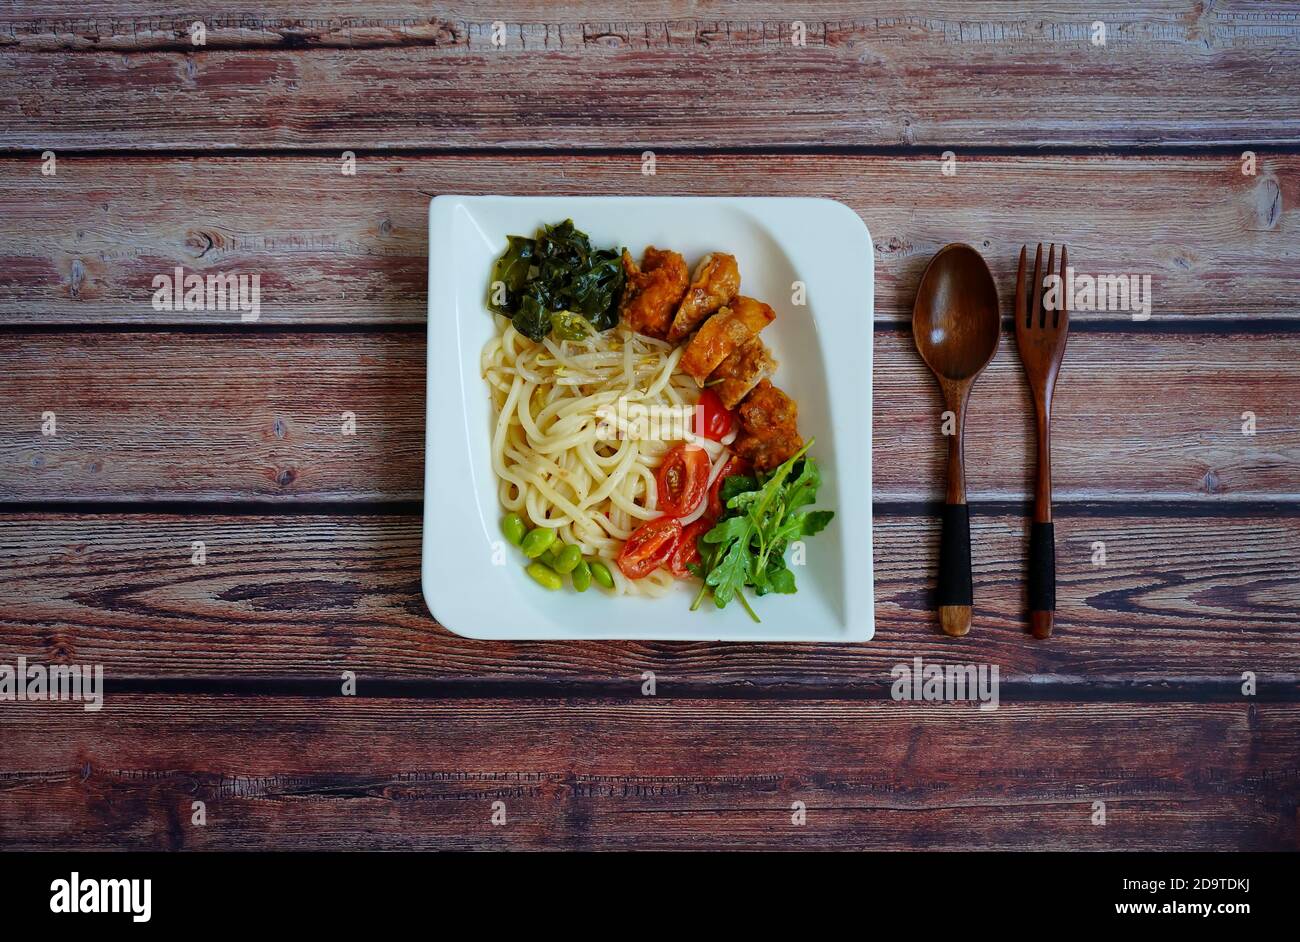 Japanischer Salat mit udon-Nudeln, Huhn, Spinat, Edamame (Soja) Bohnen und Gemüse. Stockfoto